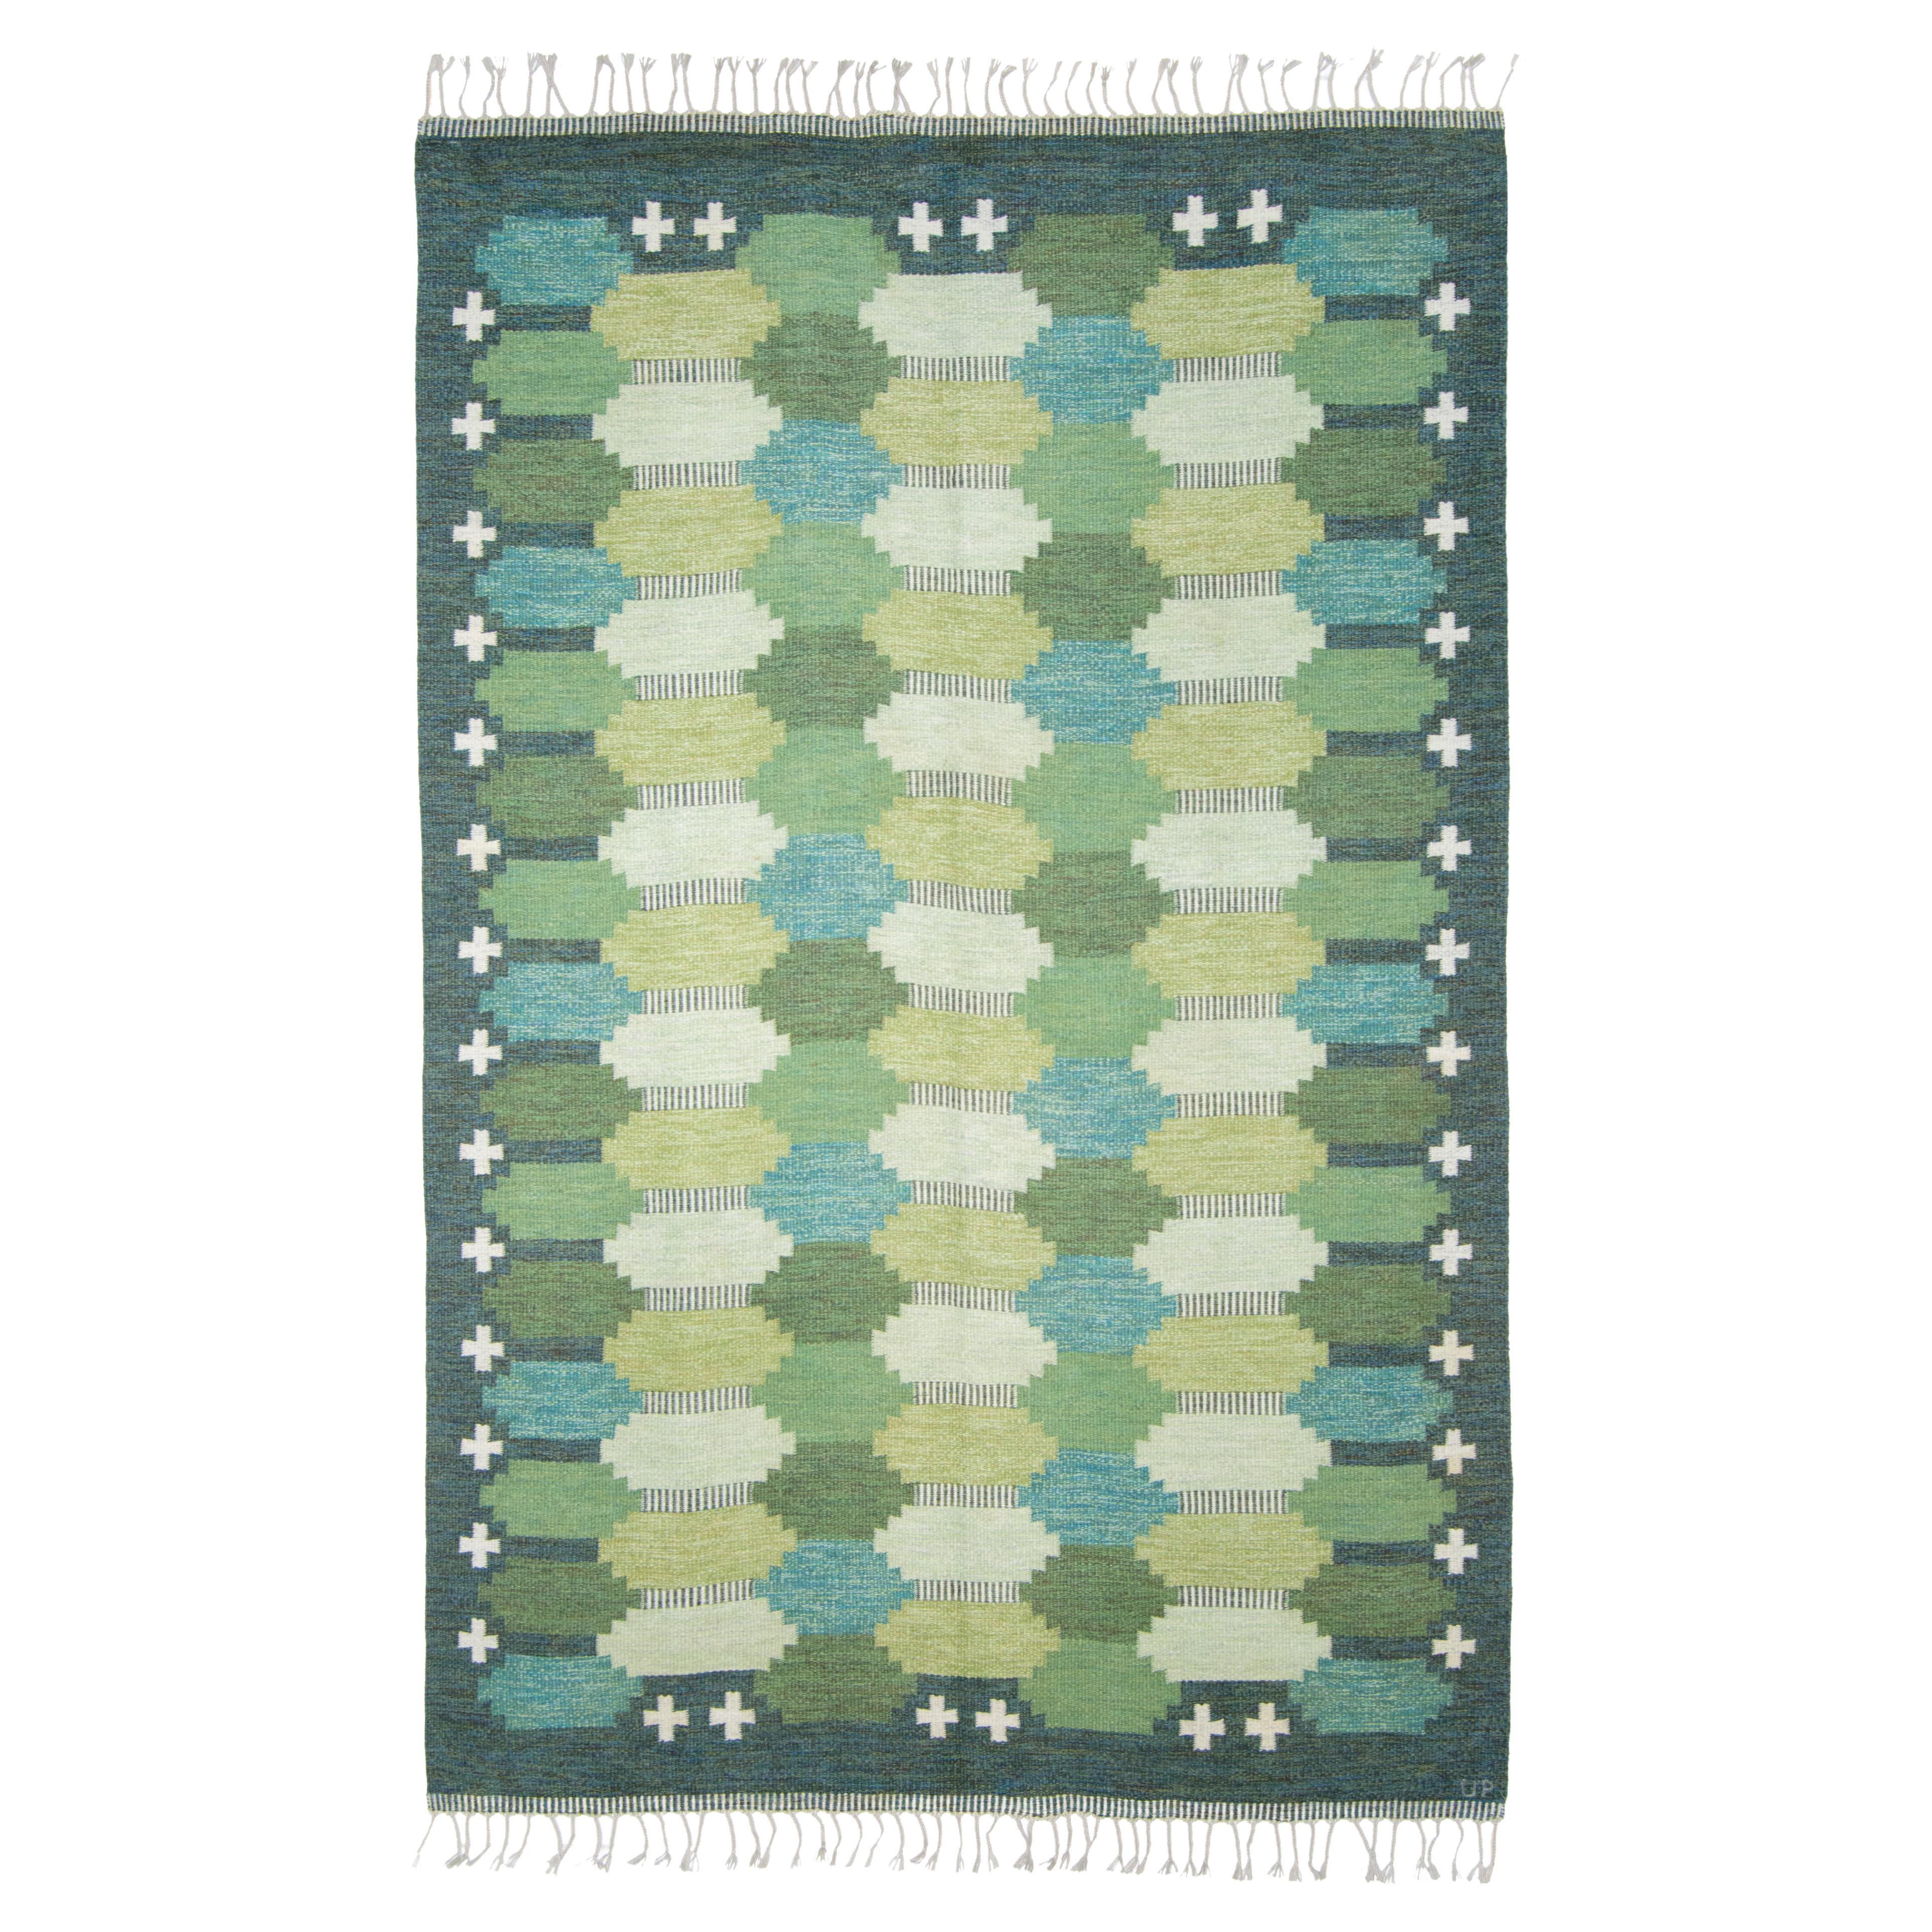 Vintage Flat-weave wool rug by Swedish textile designer Ulla Parkdal